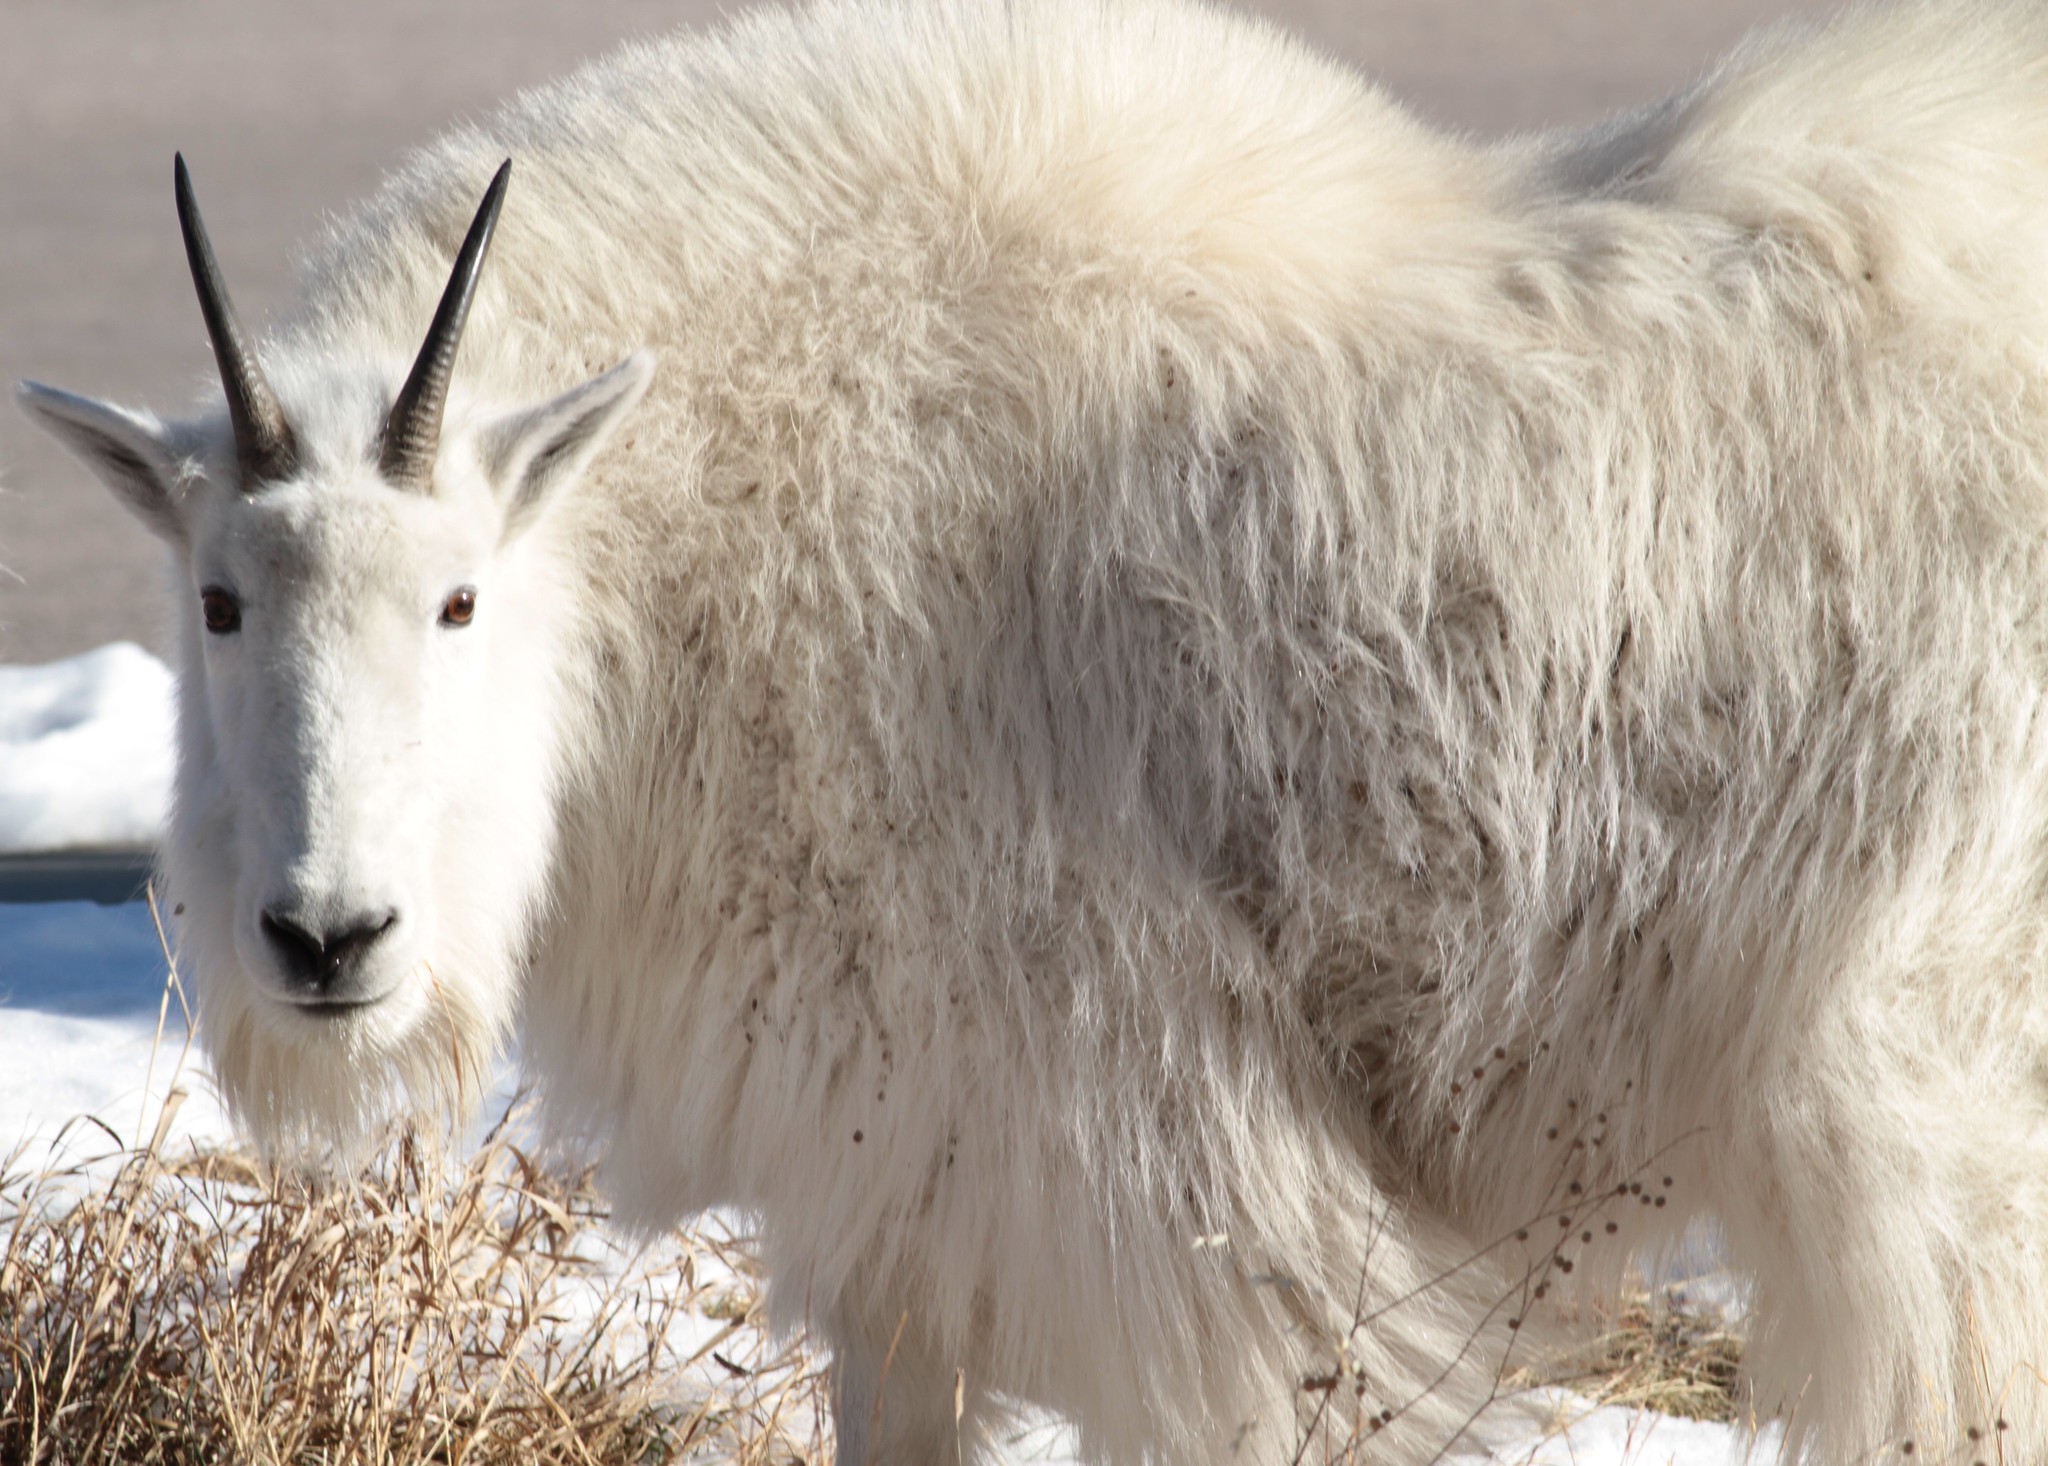 Idaho poacher caught with mountain goat